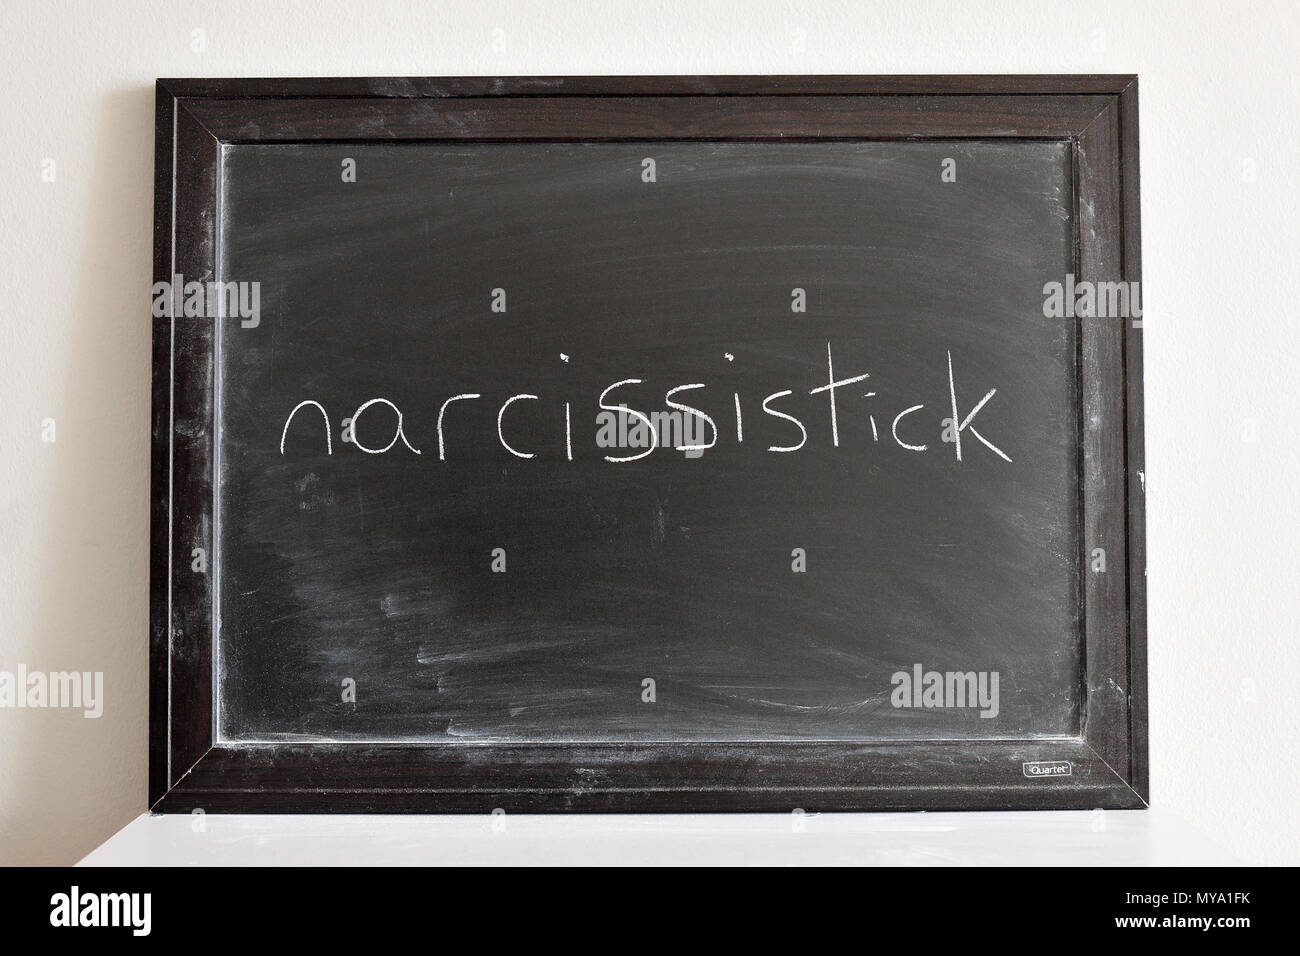 Narcissistick scritto in bianco gesso su una lavagna Foto Stock